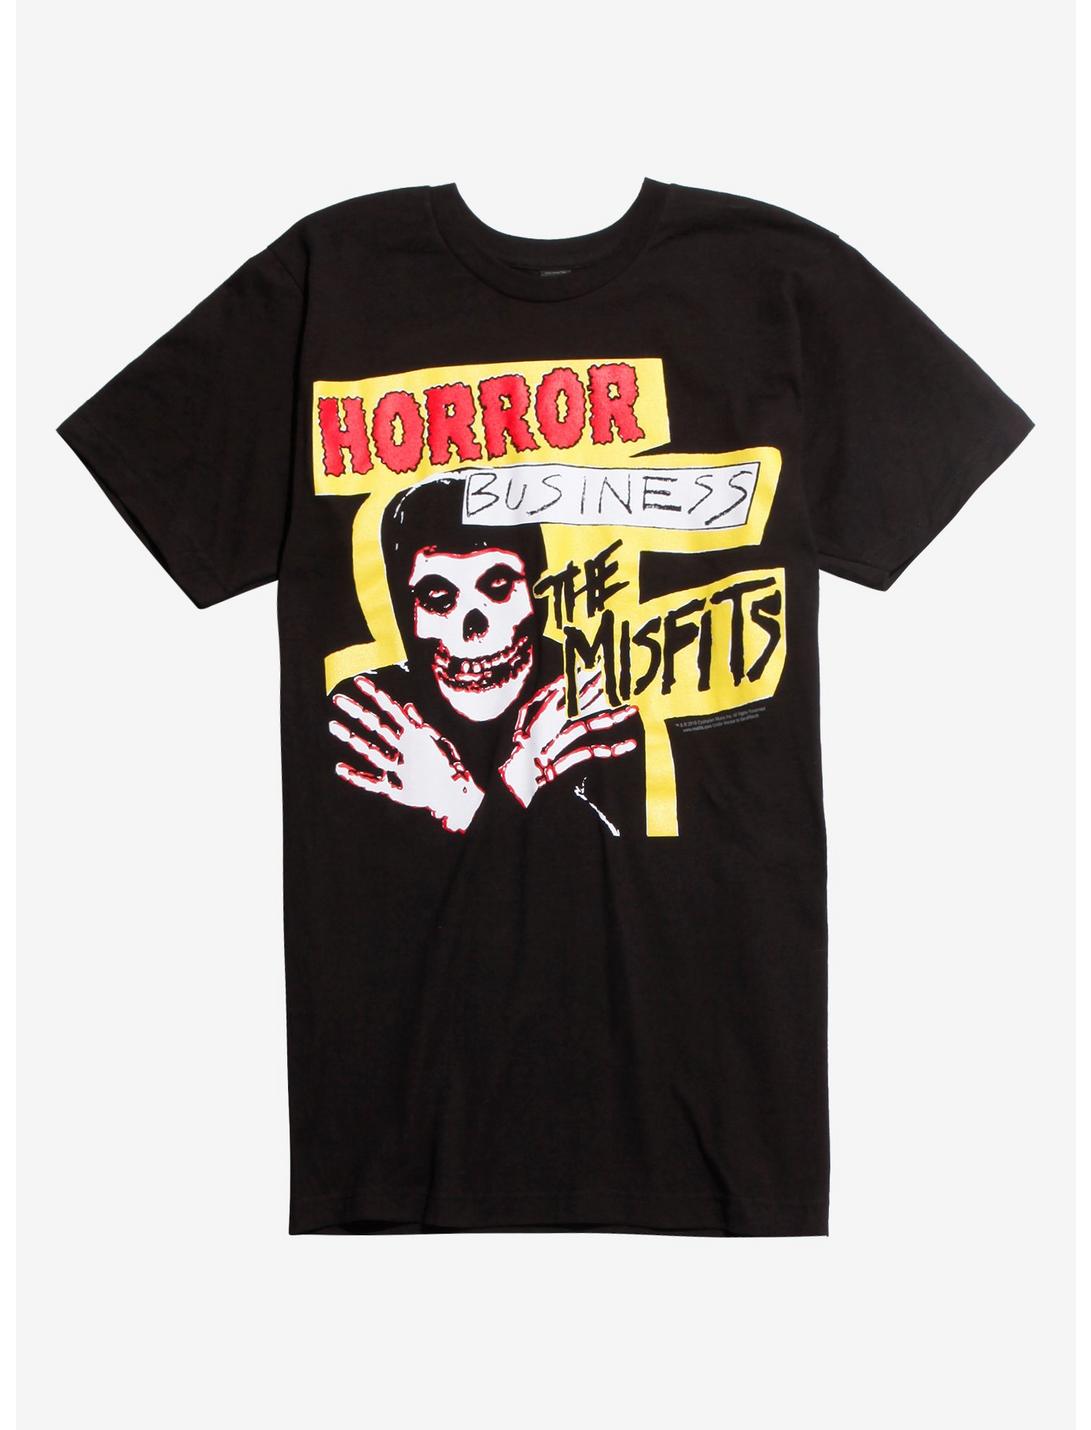 Misfits Horror Business T-Shirt, BLACK, hi-res